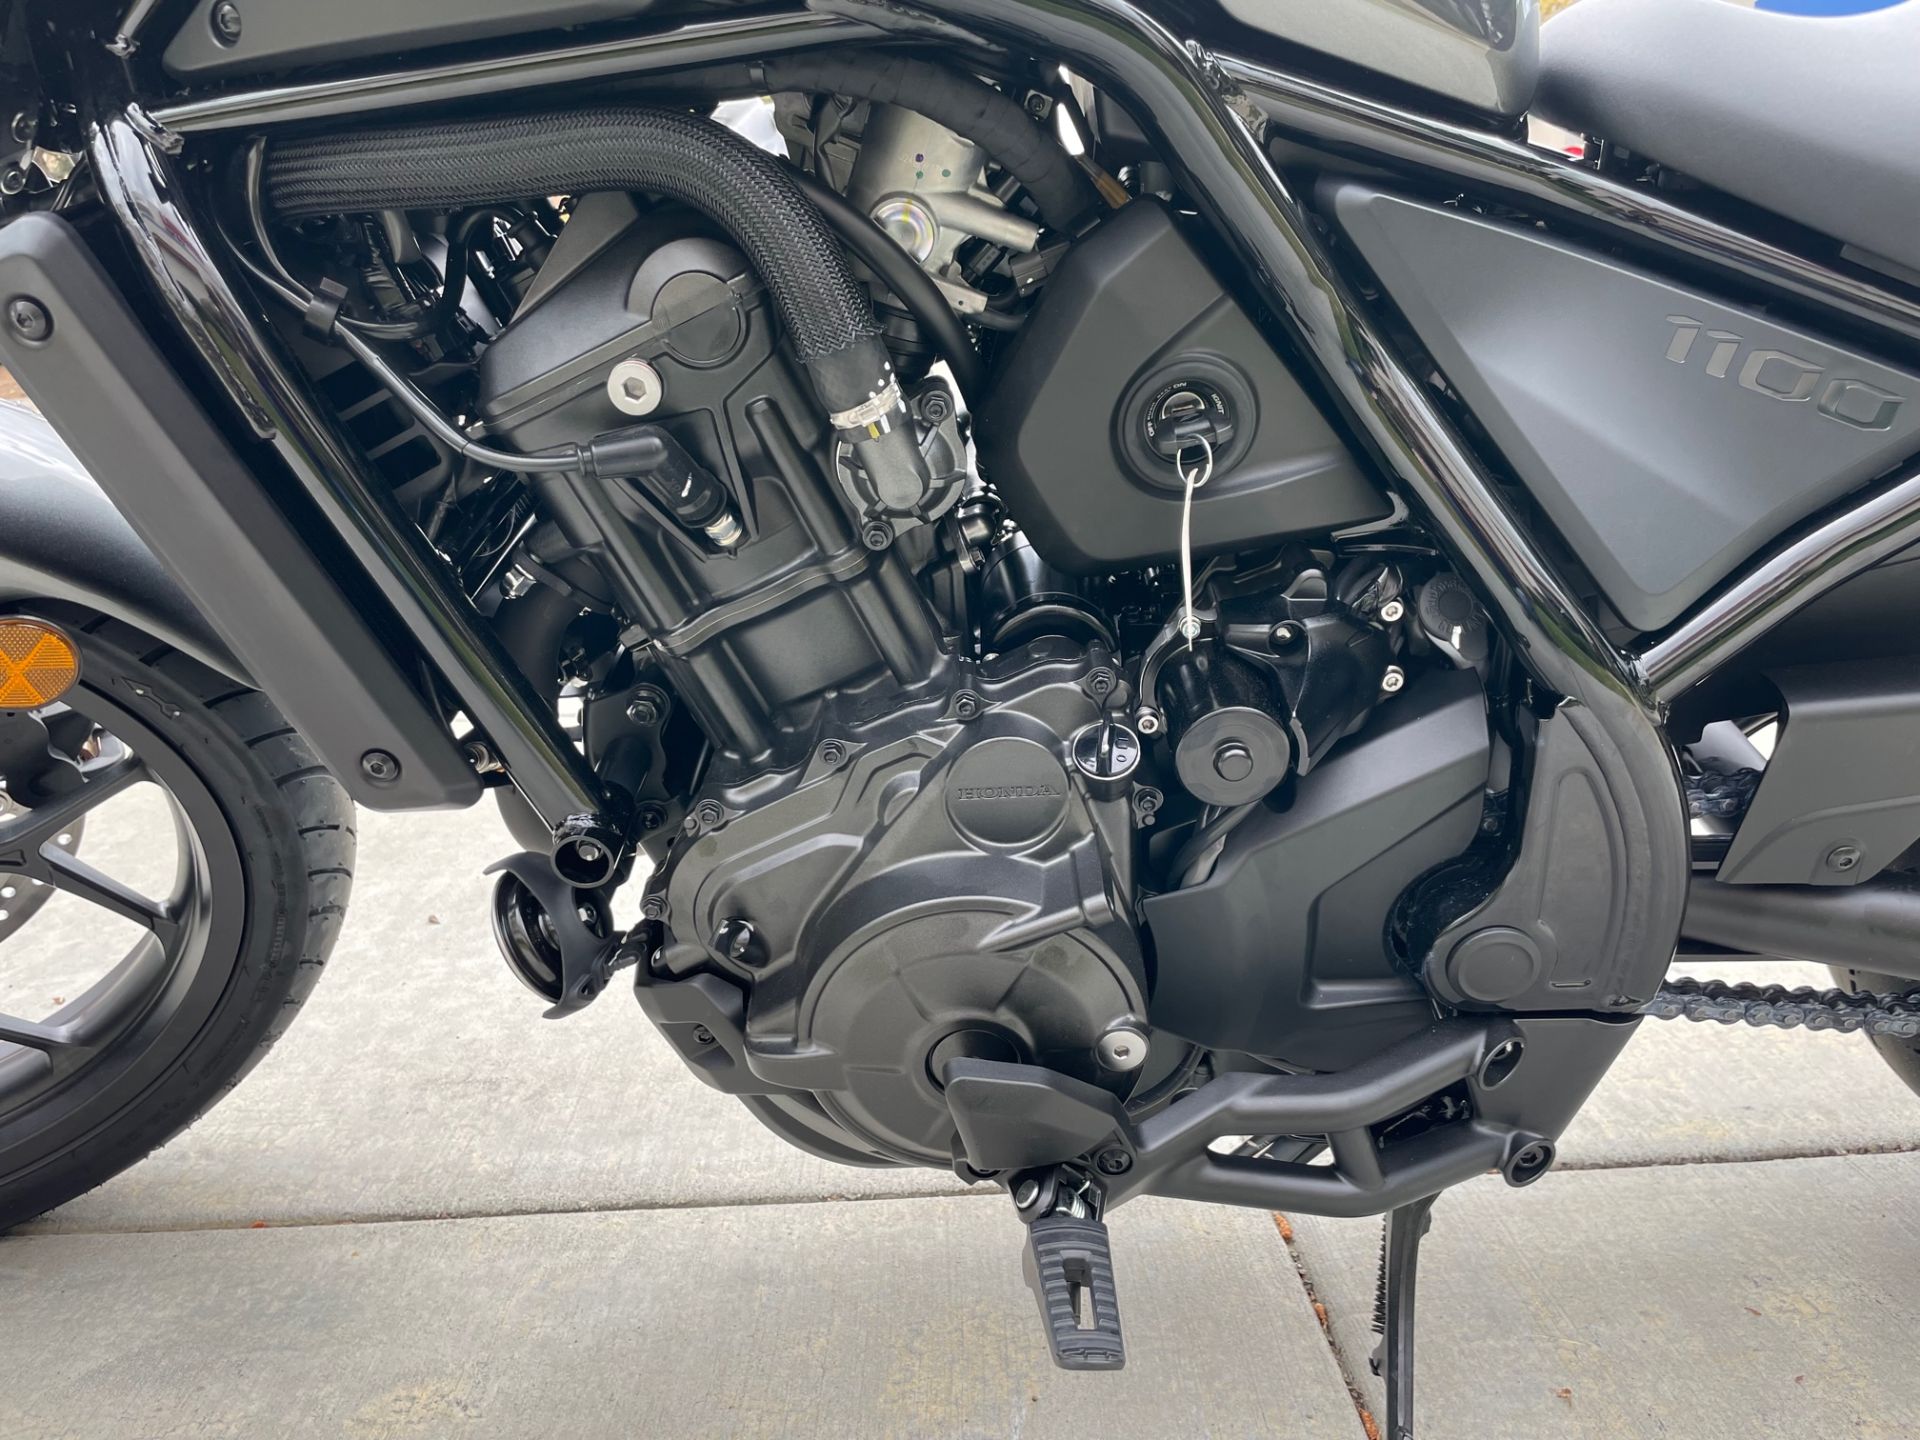 New 2023 Honda Rebel 1100 DCT | Motorcycles in EL Cajon CA | N/A ...